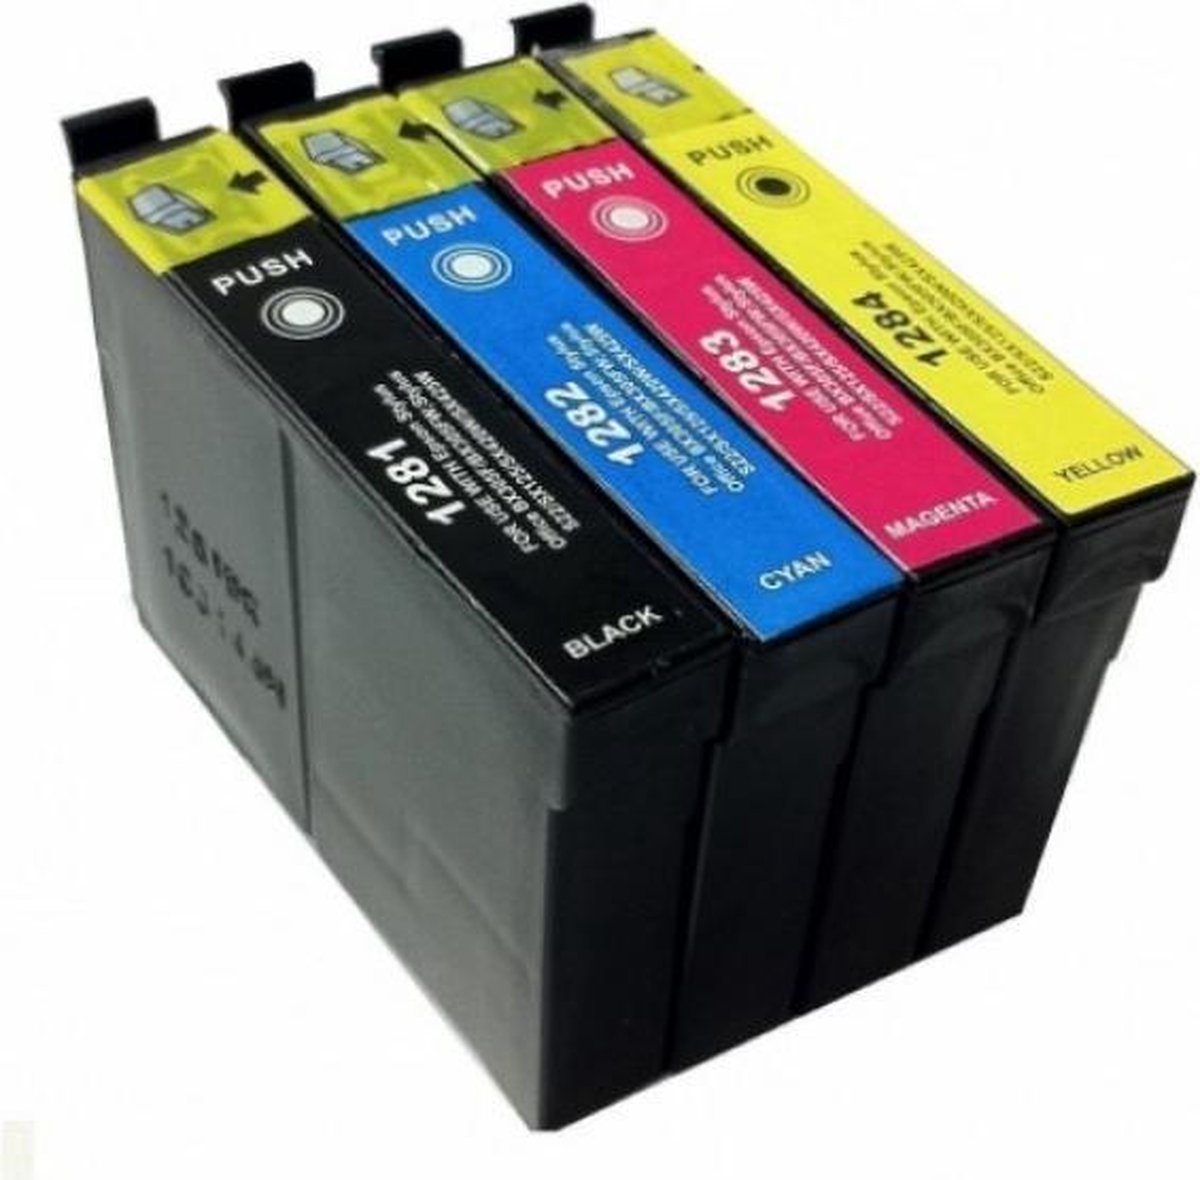 Inkmaster inktcartridges voor Epson T1285| Multipack van 4 cartridges voor Epson Stylus S22, SX125, SX130, SX230, SX235W, SX420, SX420W, SX425W, SX430W, SX435W, SX438W, SX440W, SX445W, Stylus Office BX305F, BX305FW